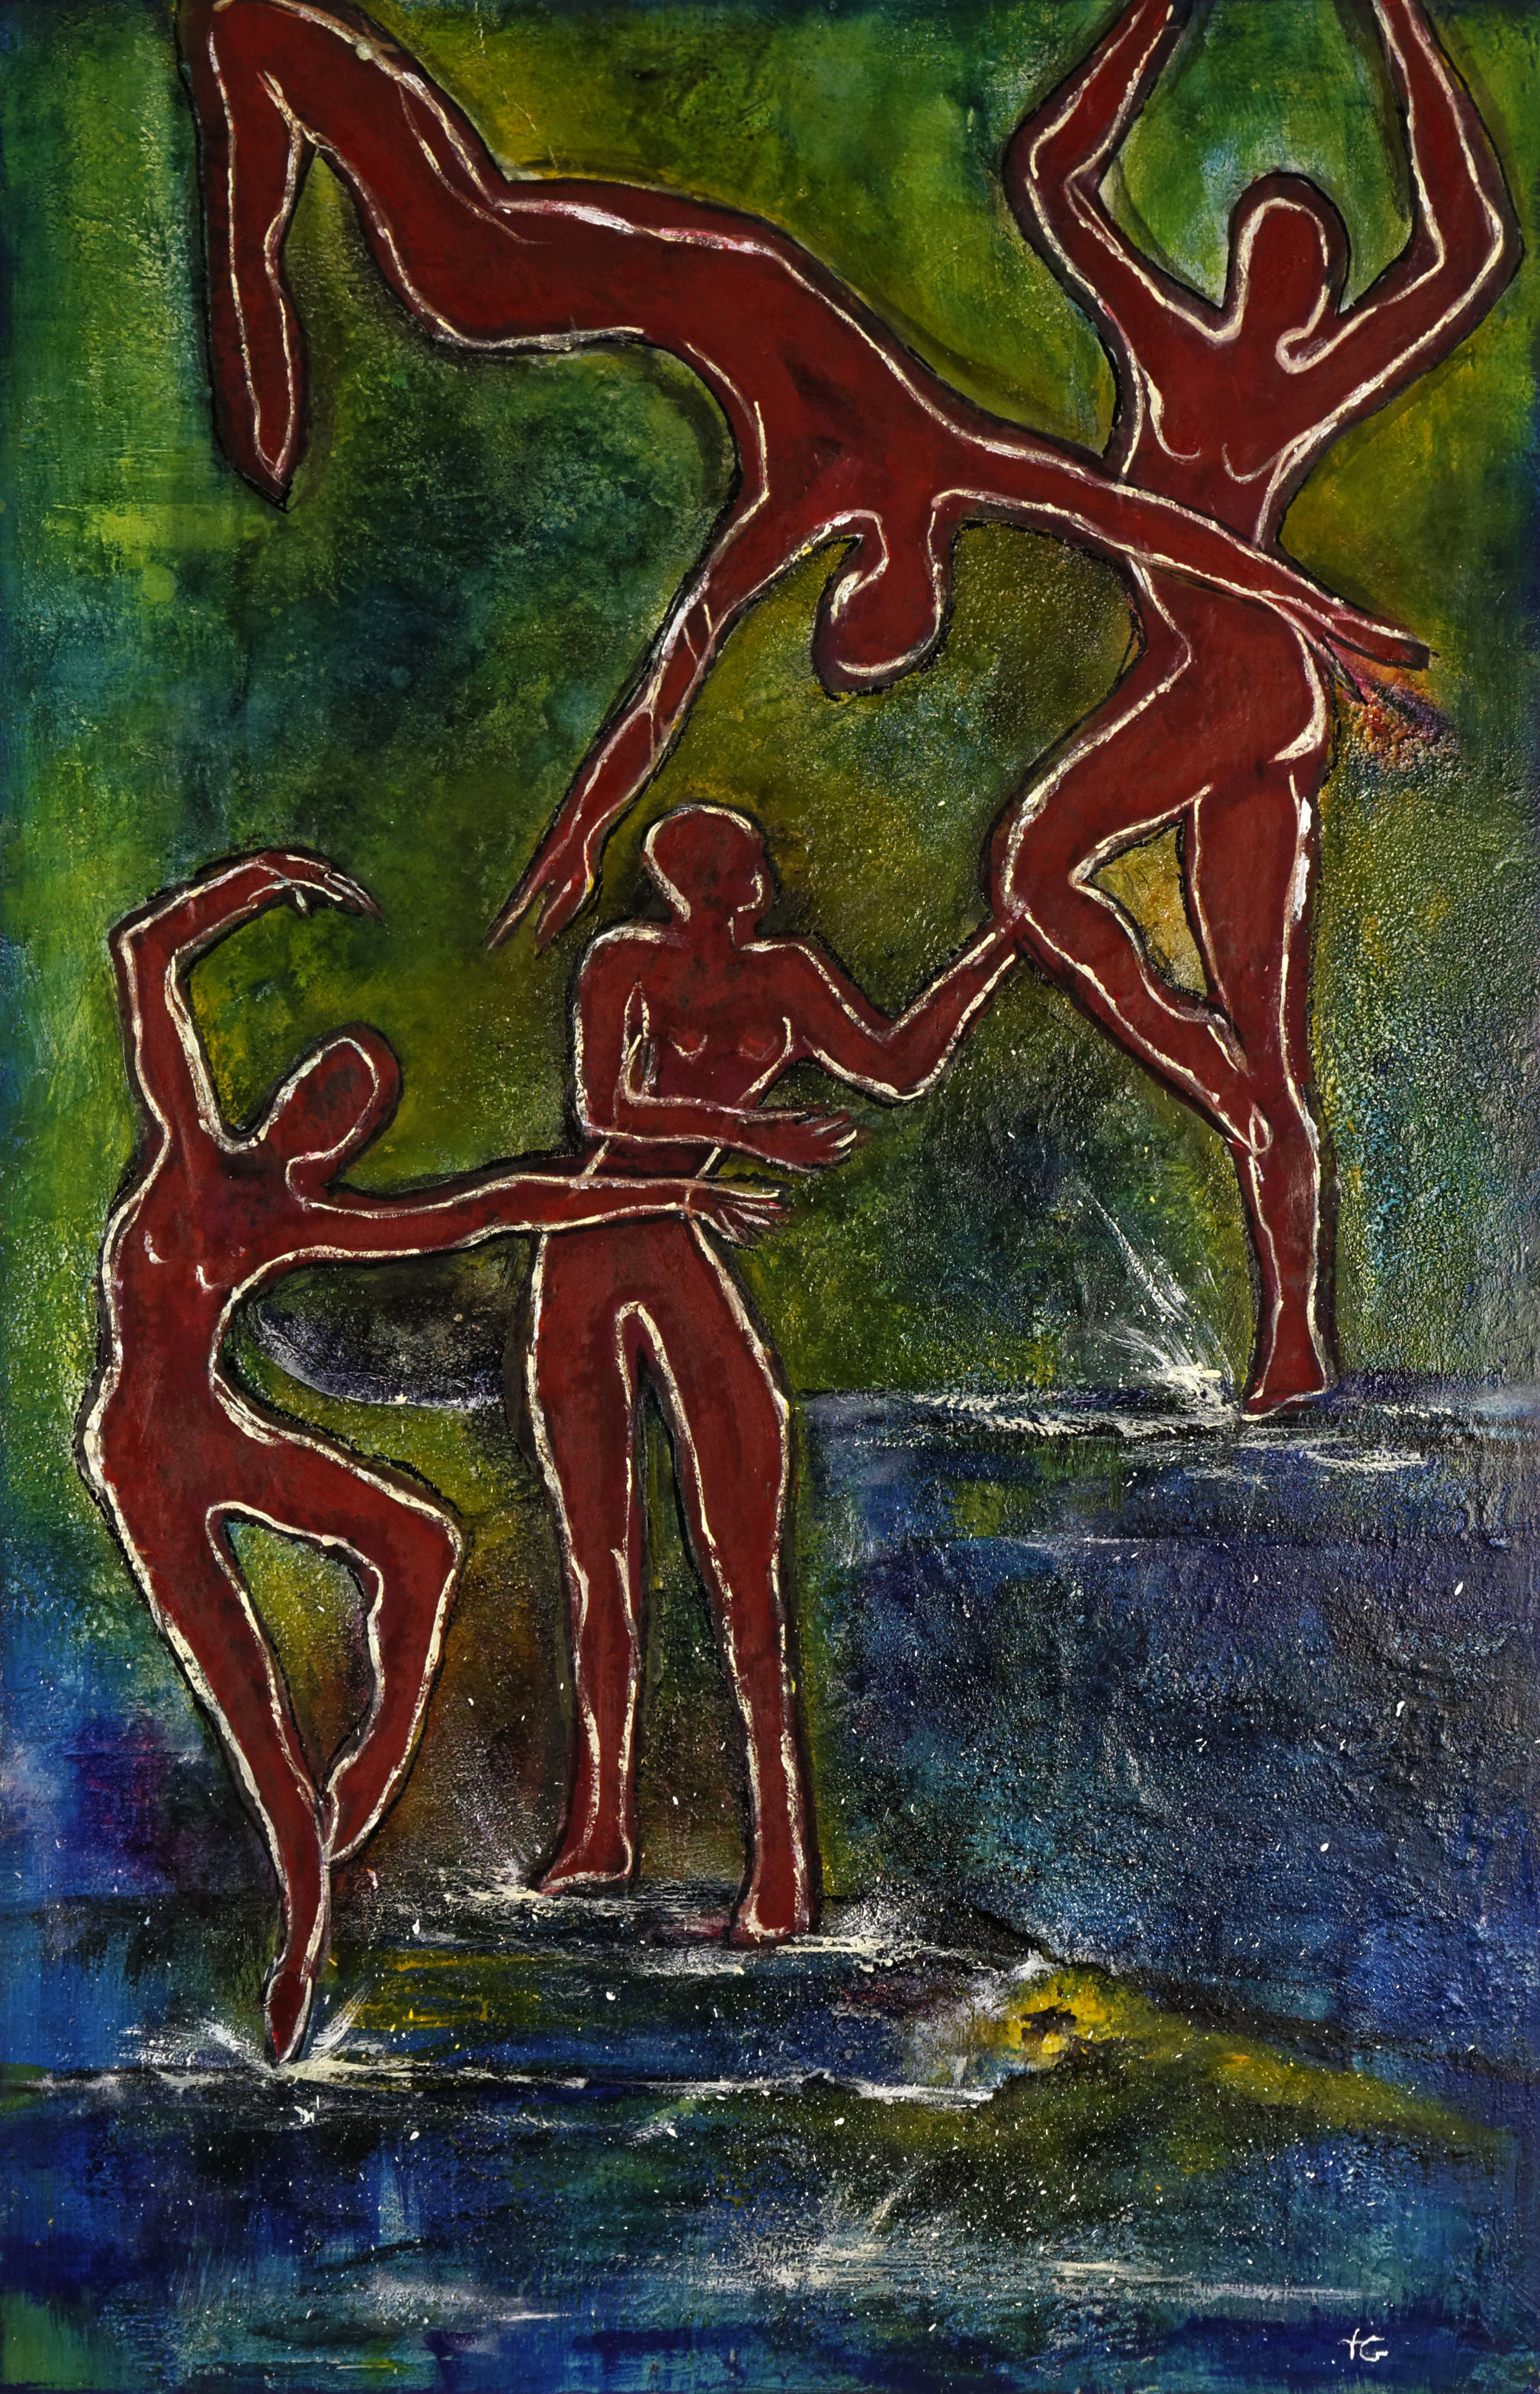 Tanz auf dem Wasser, Textile Collage, 75 x 115 cm.